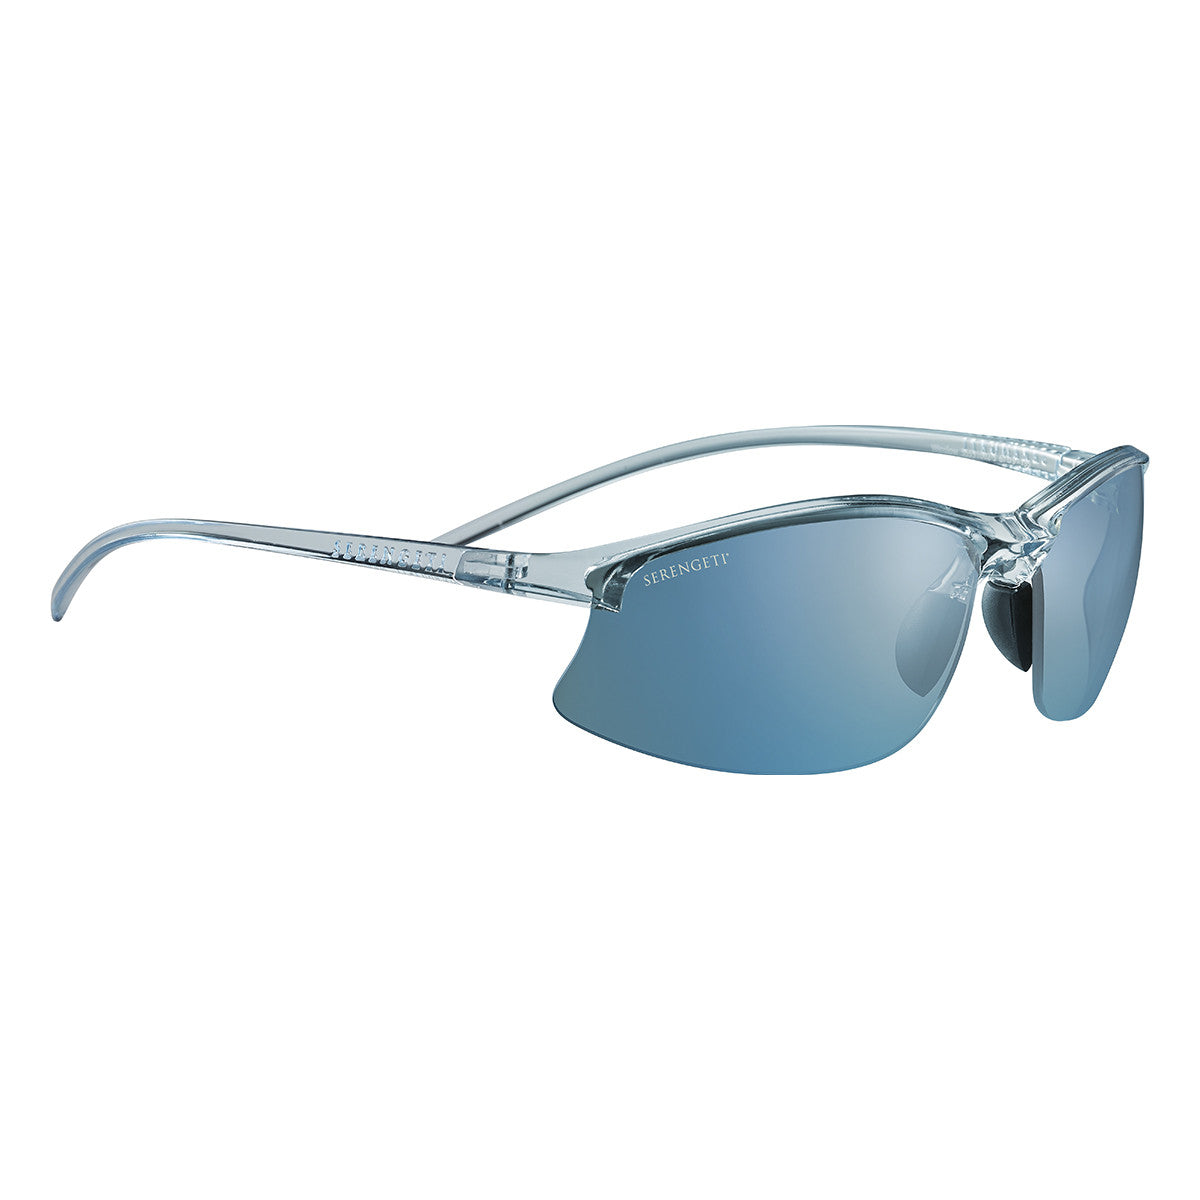 Serengeti Winslow Sunglasses  Shiny Crystal Ice Blue Medium, Large